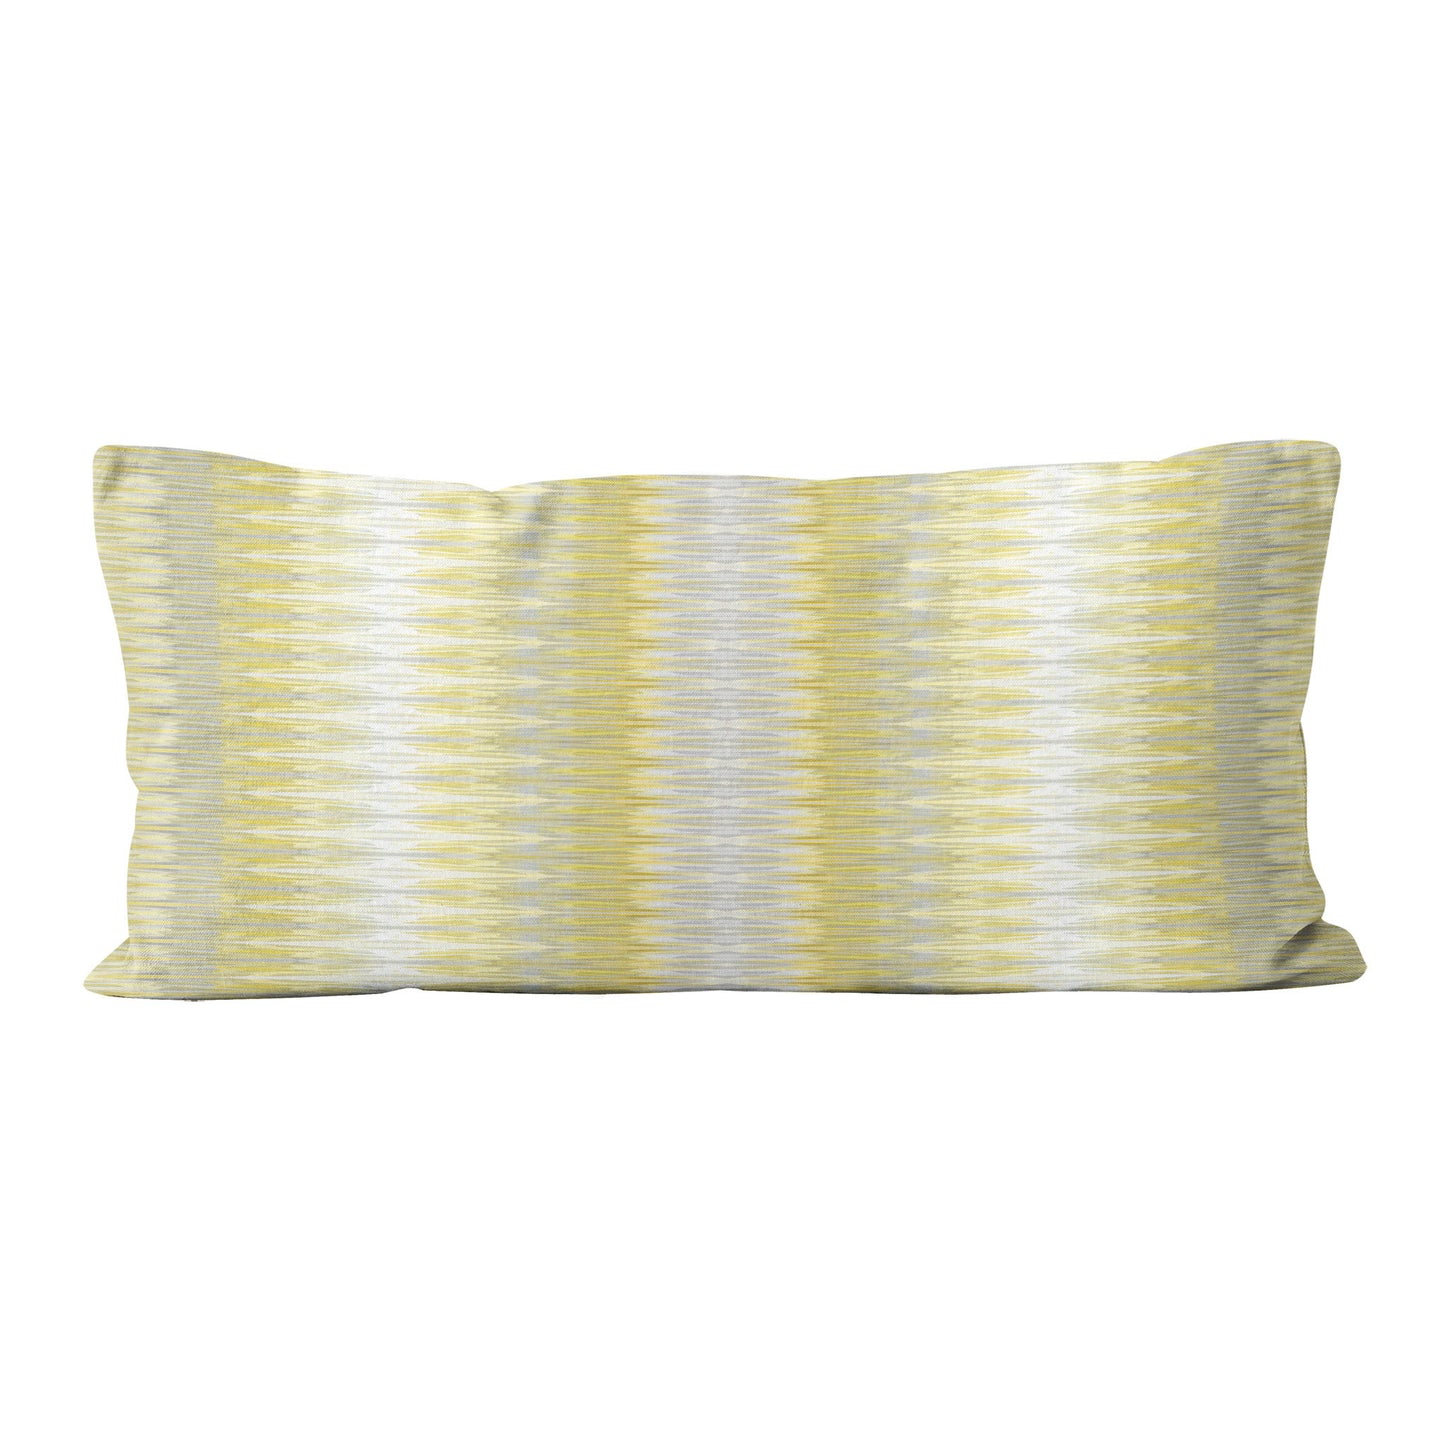 Rectangular lumbar pillow featuring abstract yellow and gray stripe.